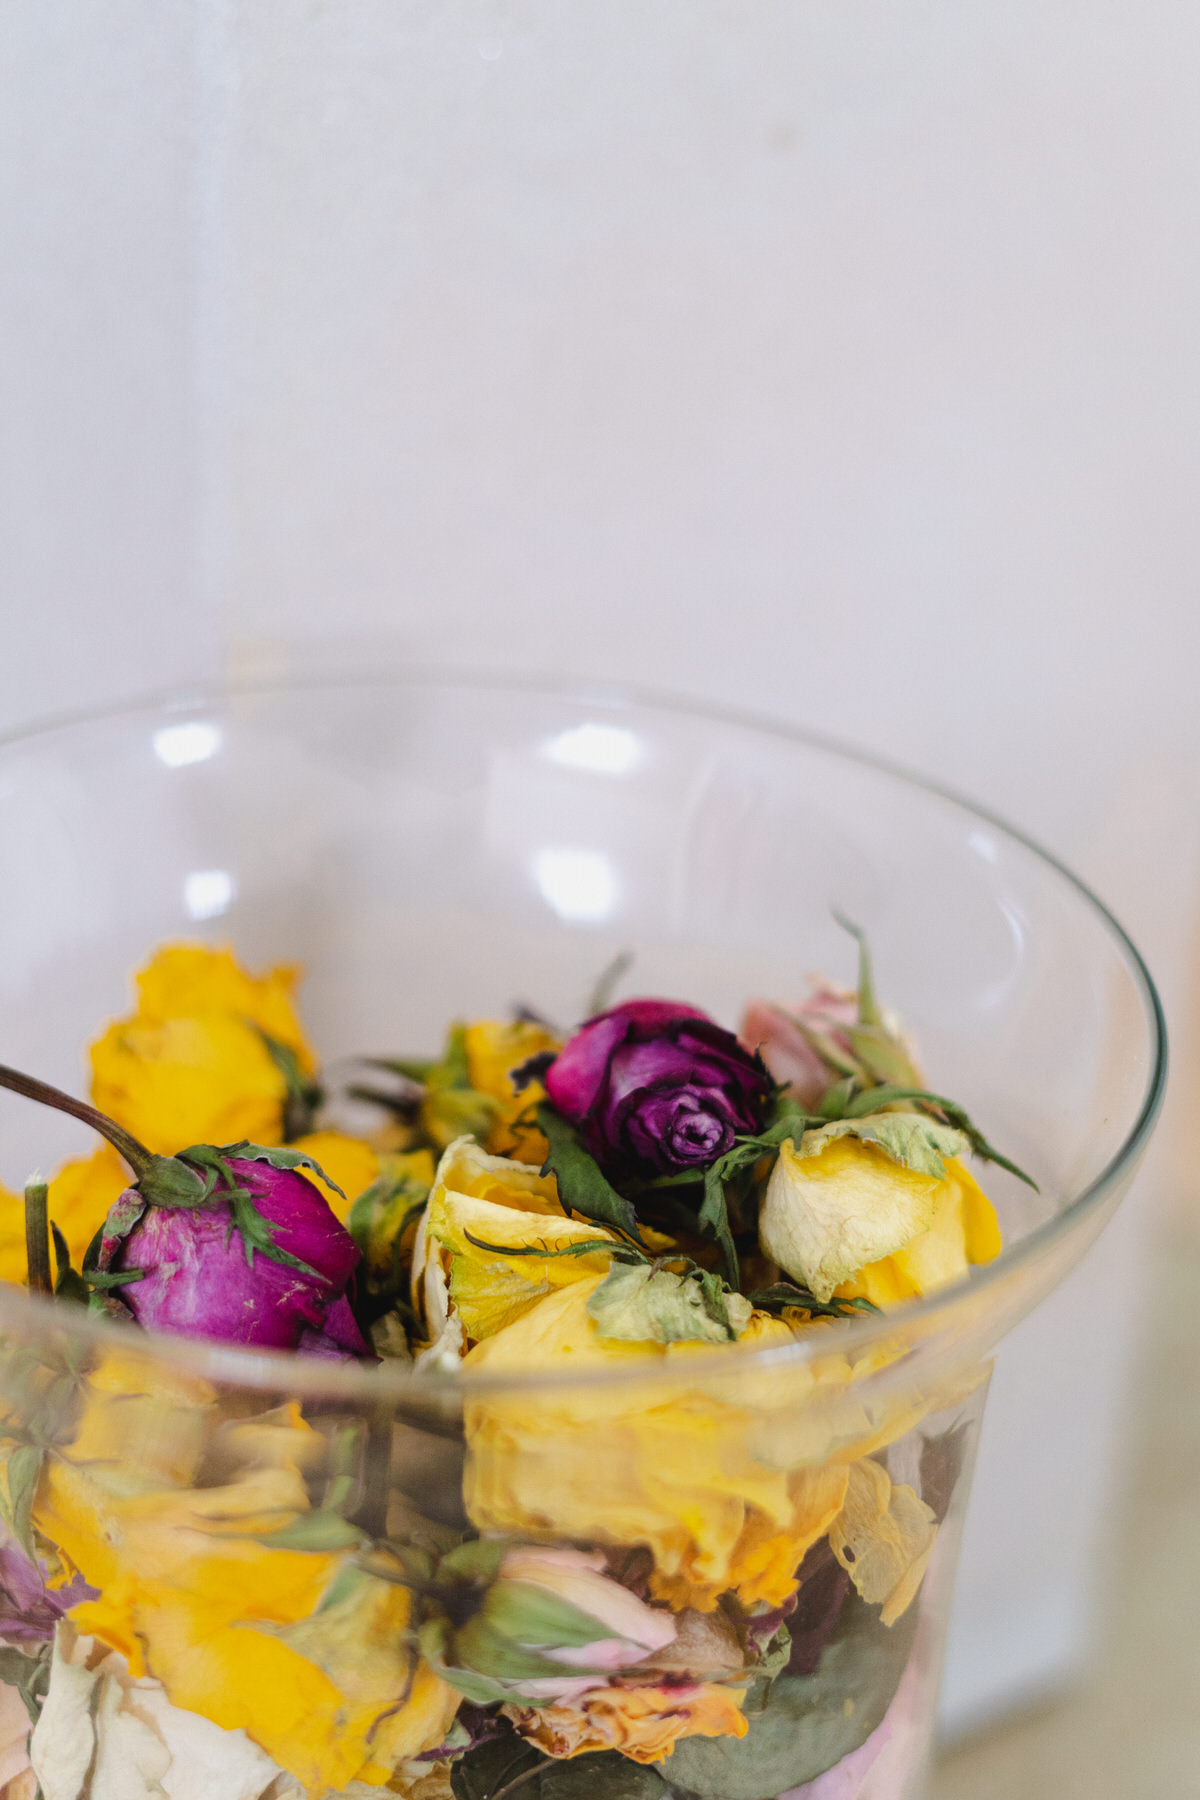 Vertrocknete Rosen in einem Glas